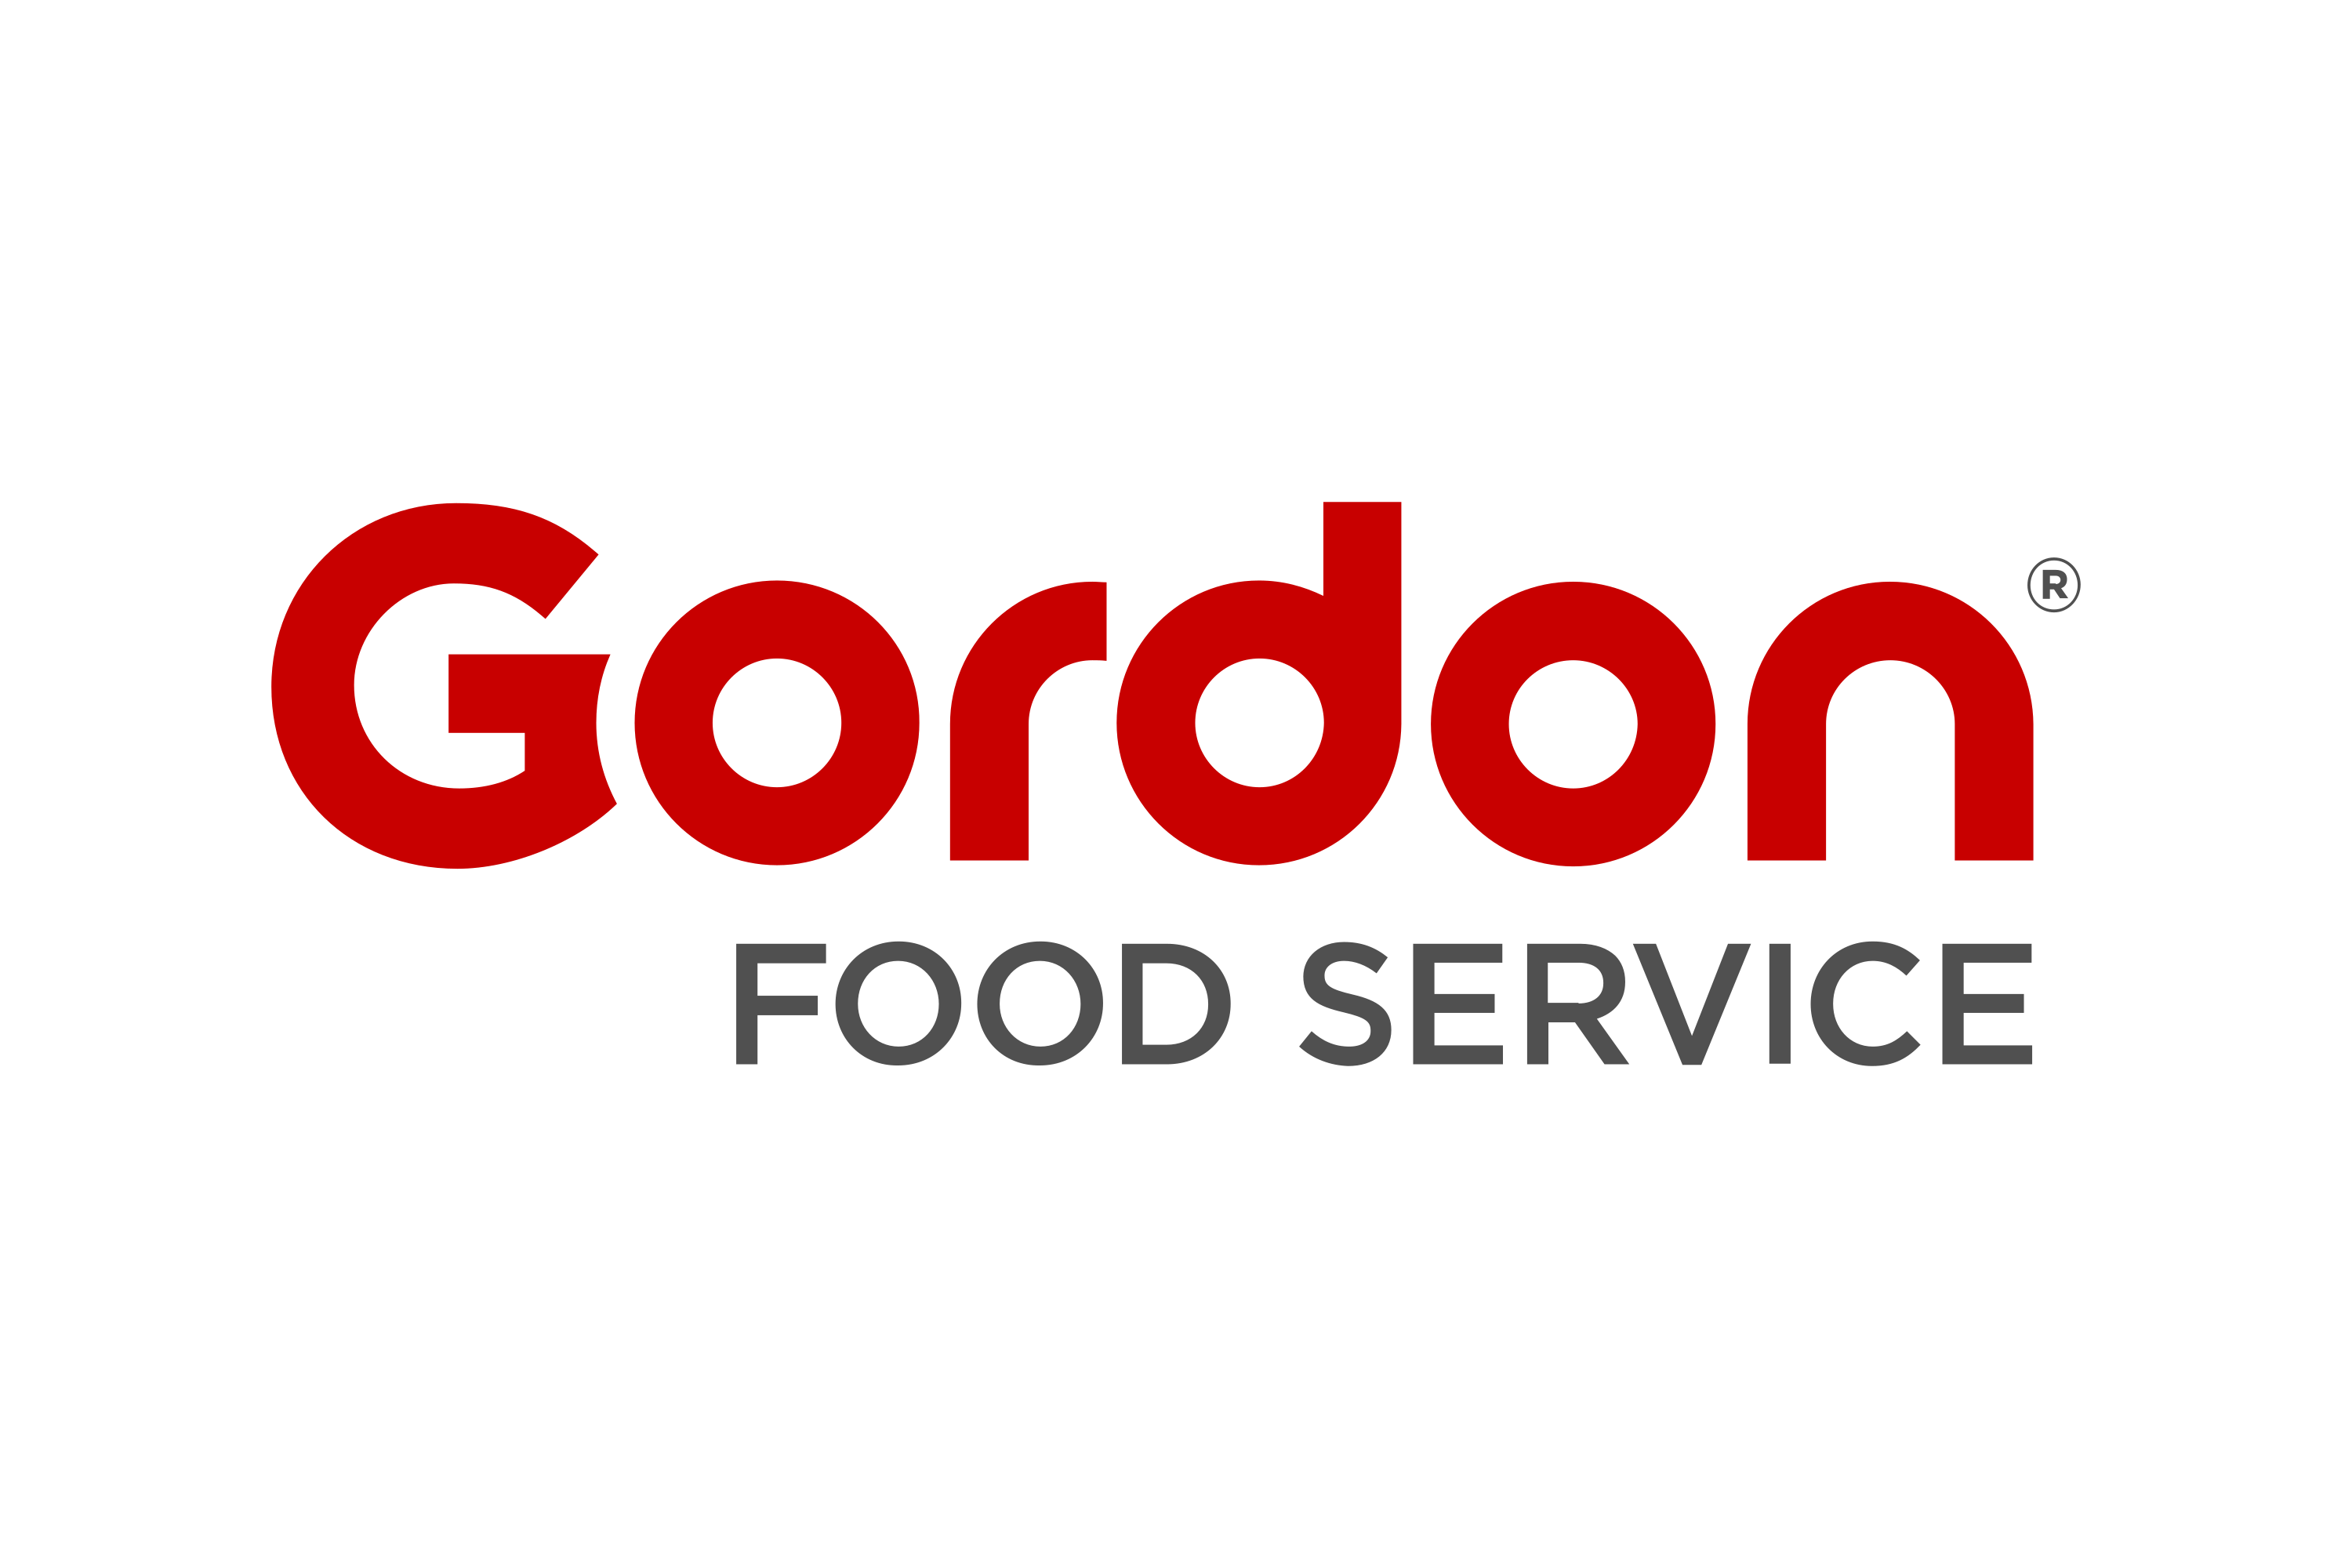 Download Gordon Food Service Logo in SVG Vector or PNG File Format